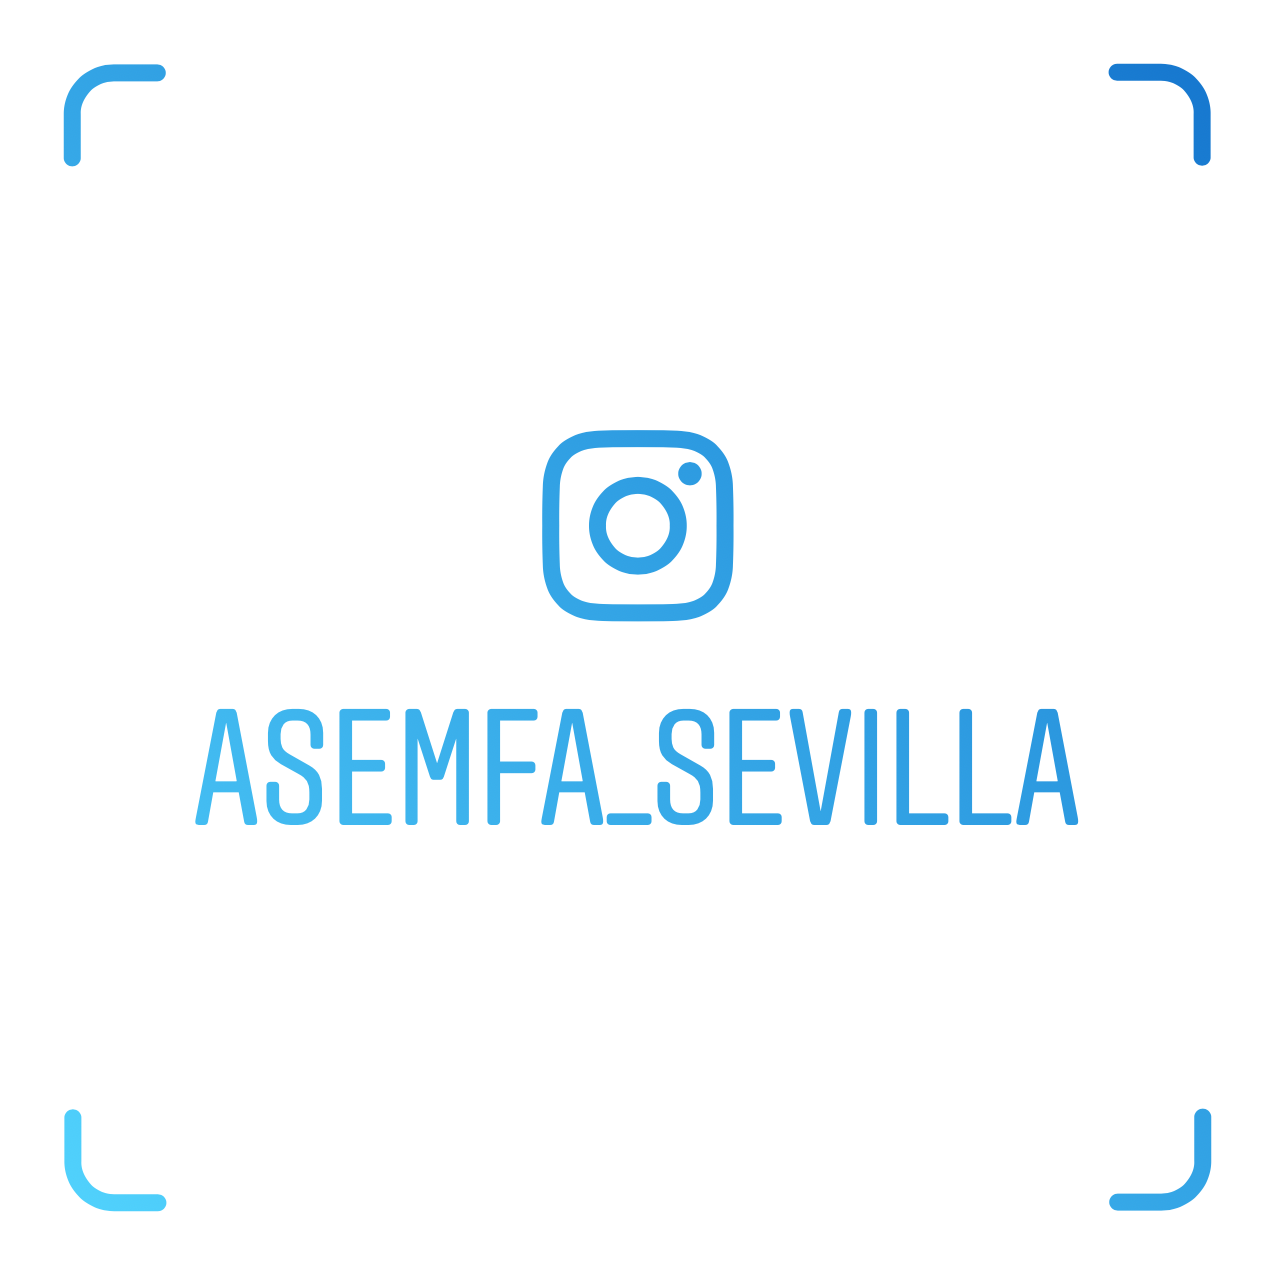 Asemfa Sevilla Instagram